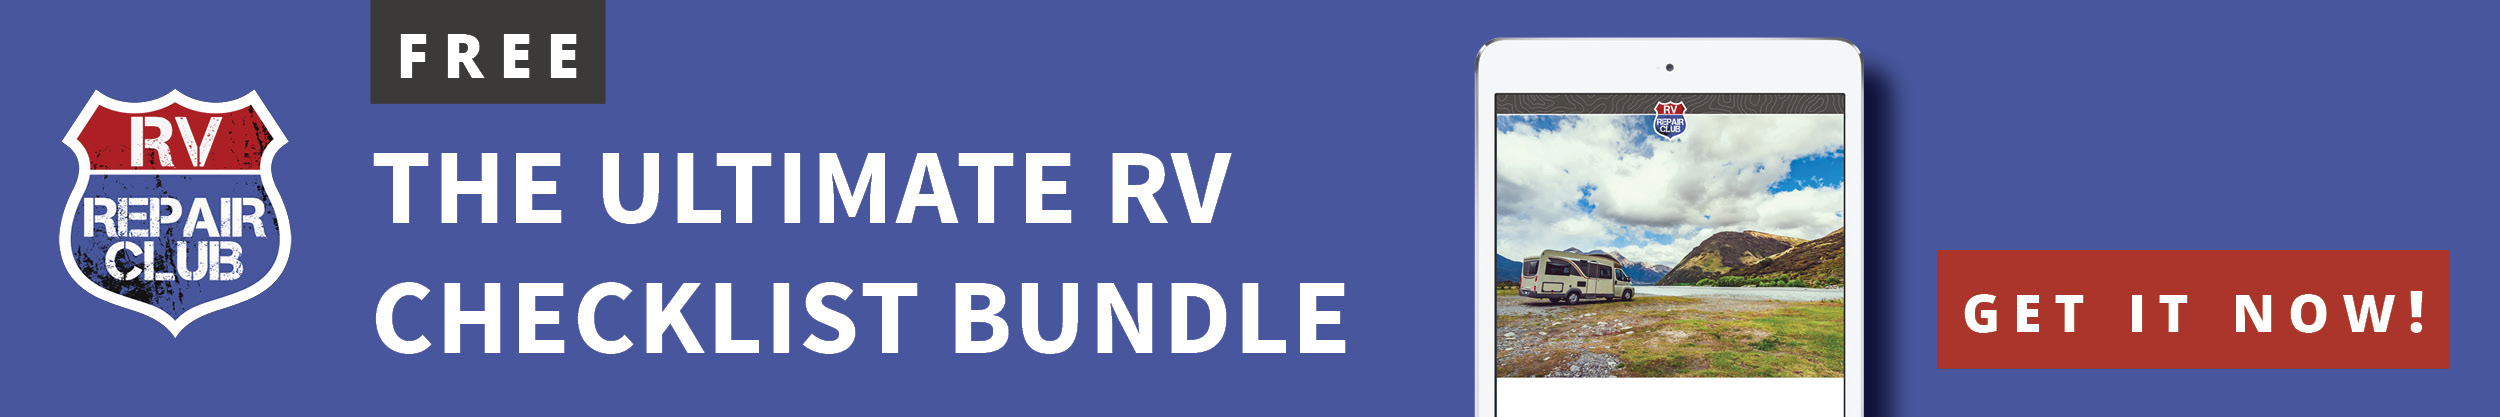 Ultimate RV Checklist Bundle